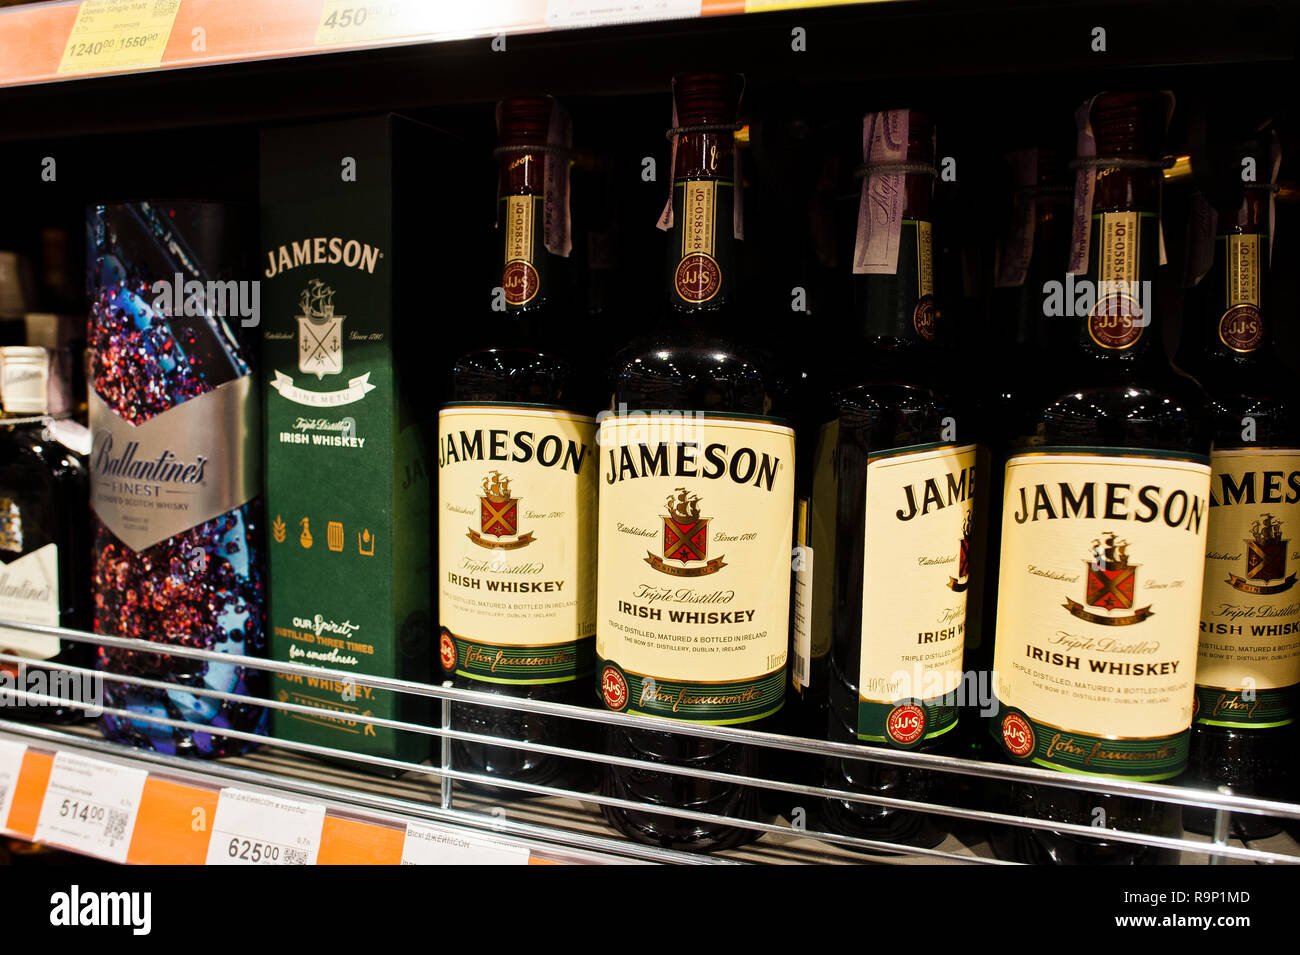 estanteria llena de botellas de whisky irlandes